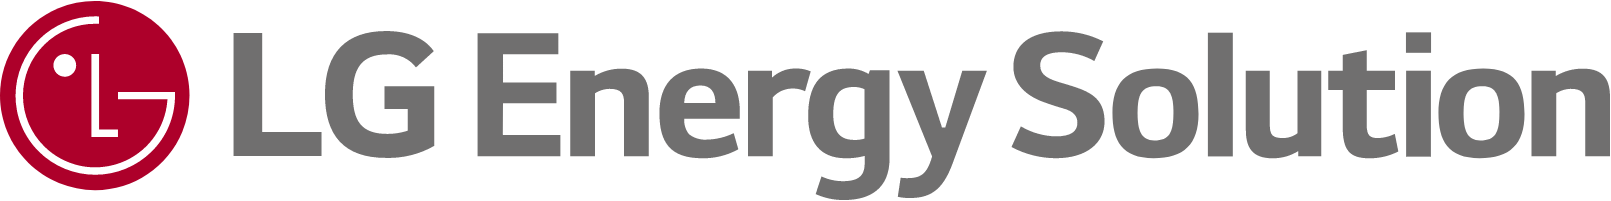 Merk: LG Energy